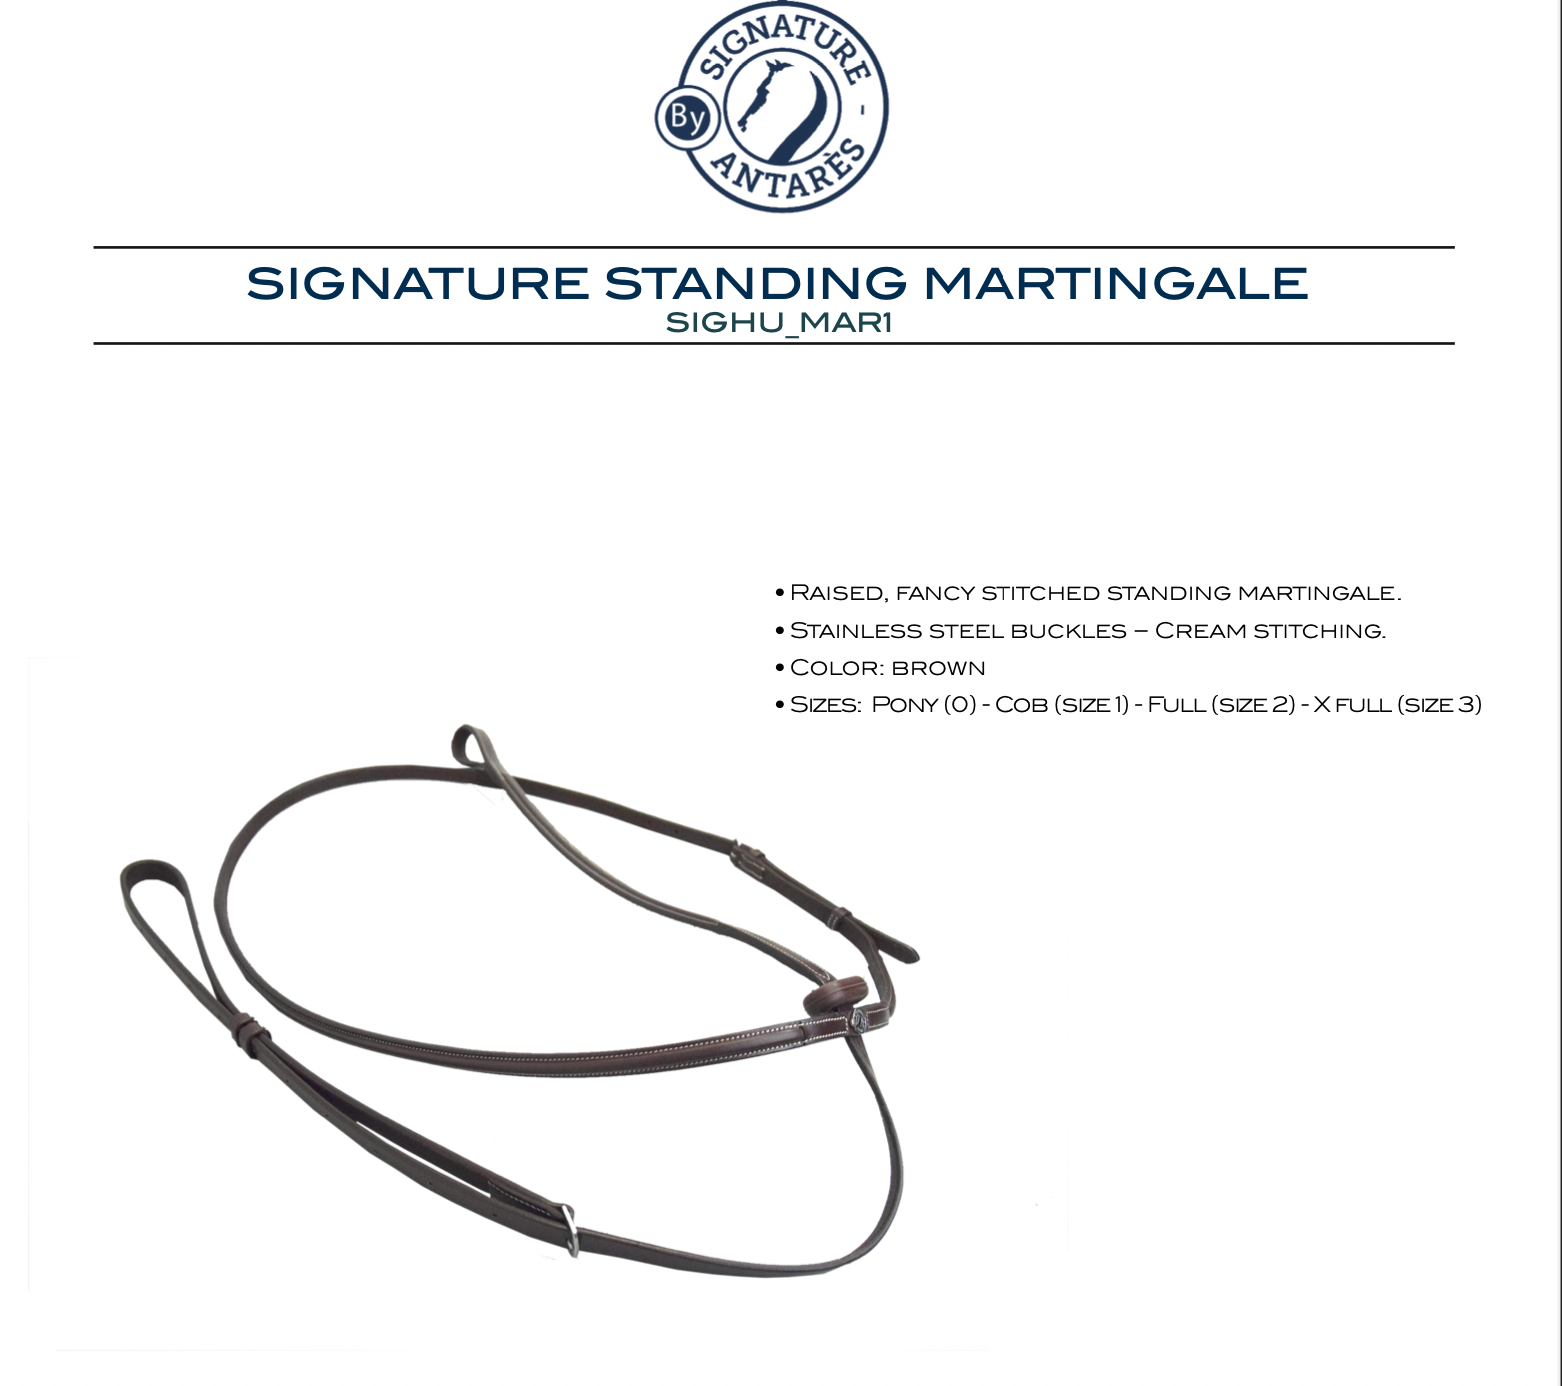 Antares Signature Martingale